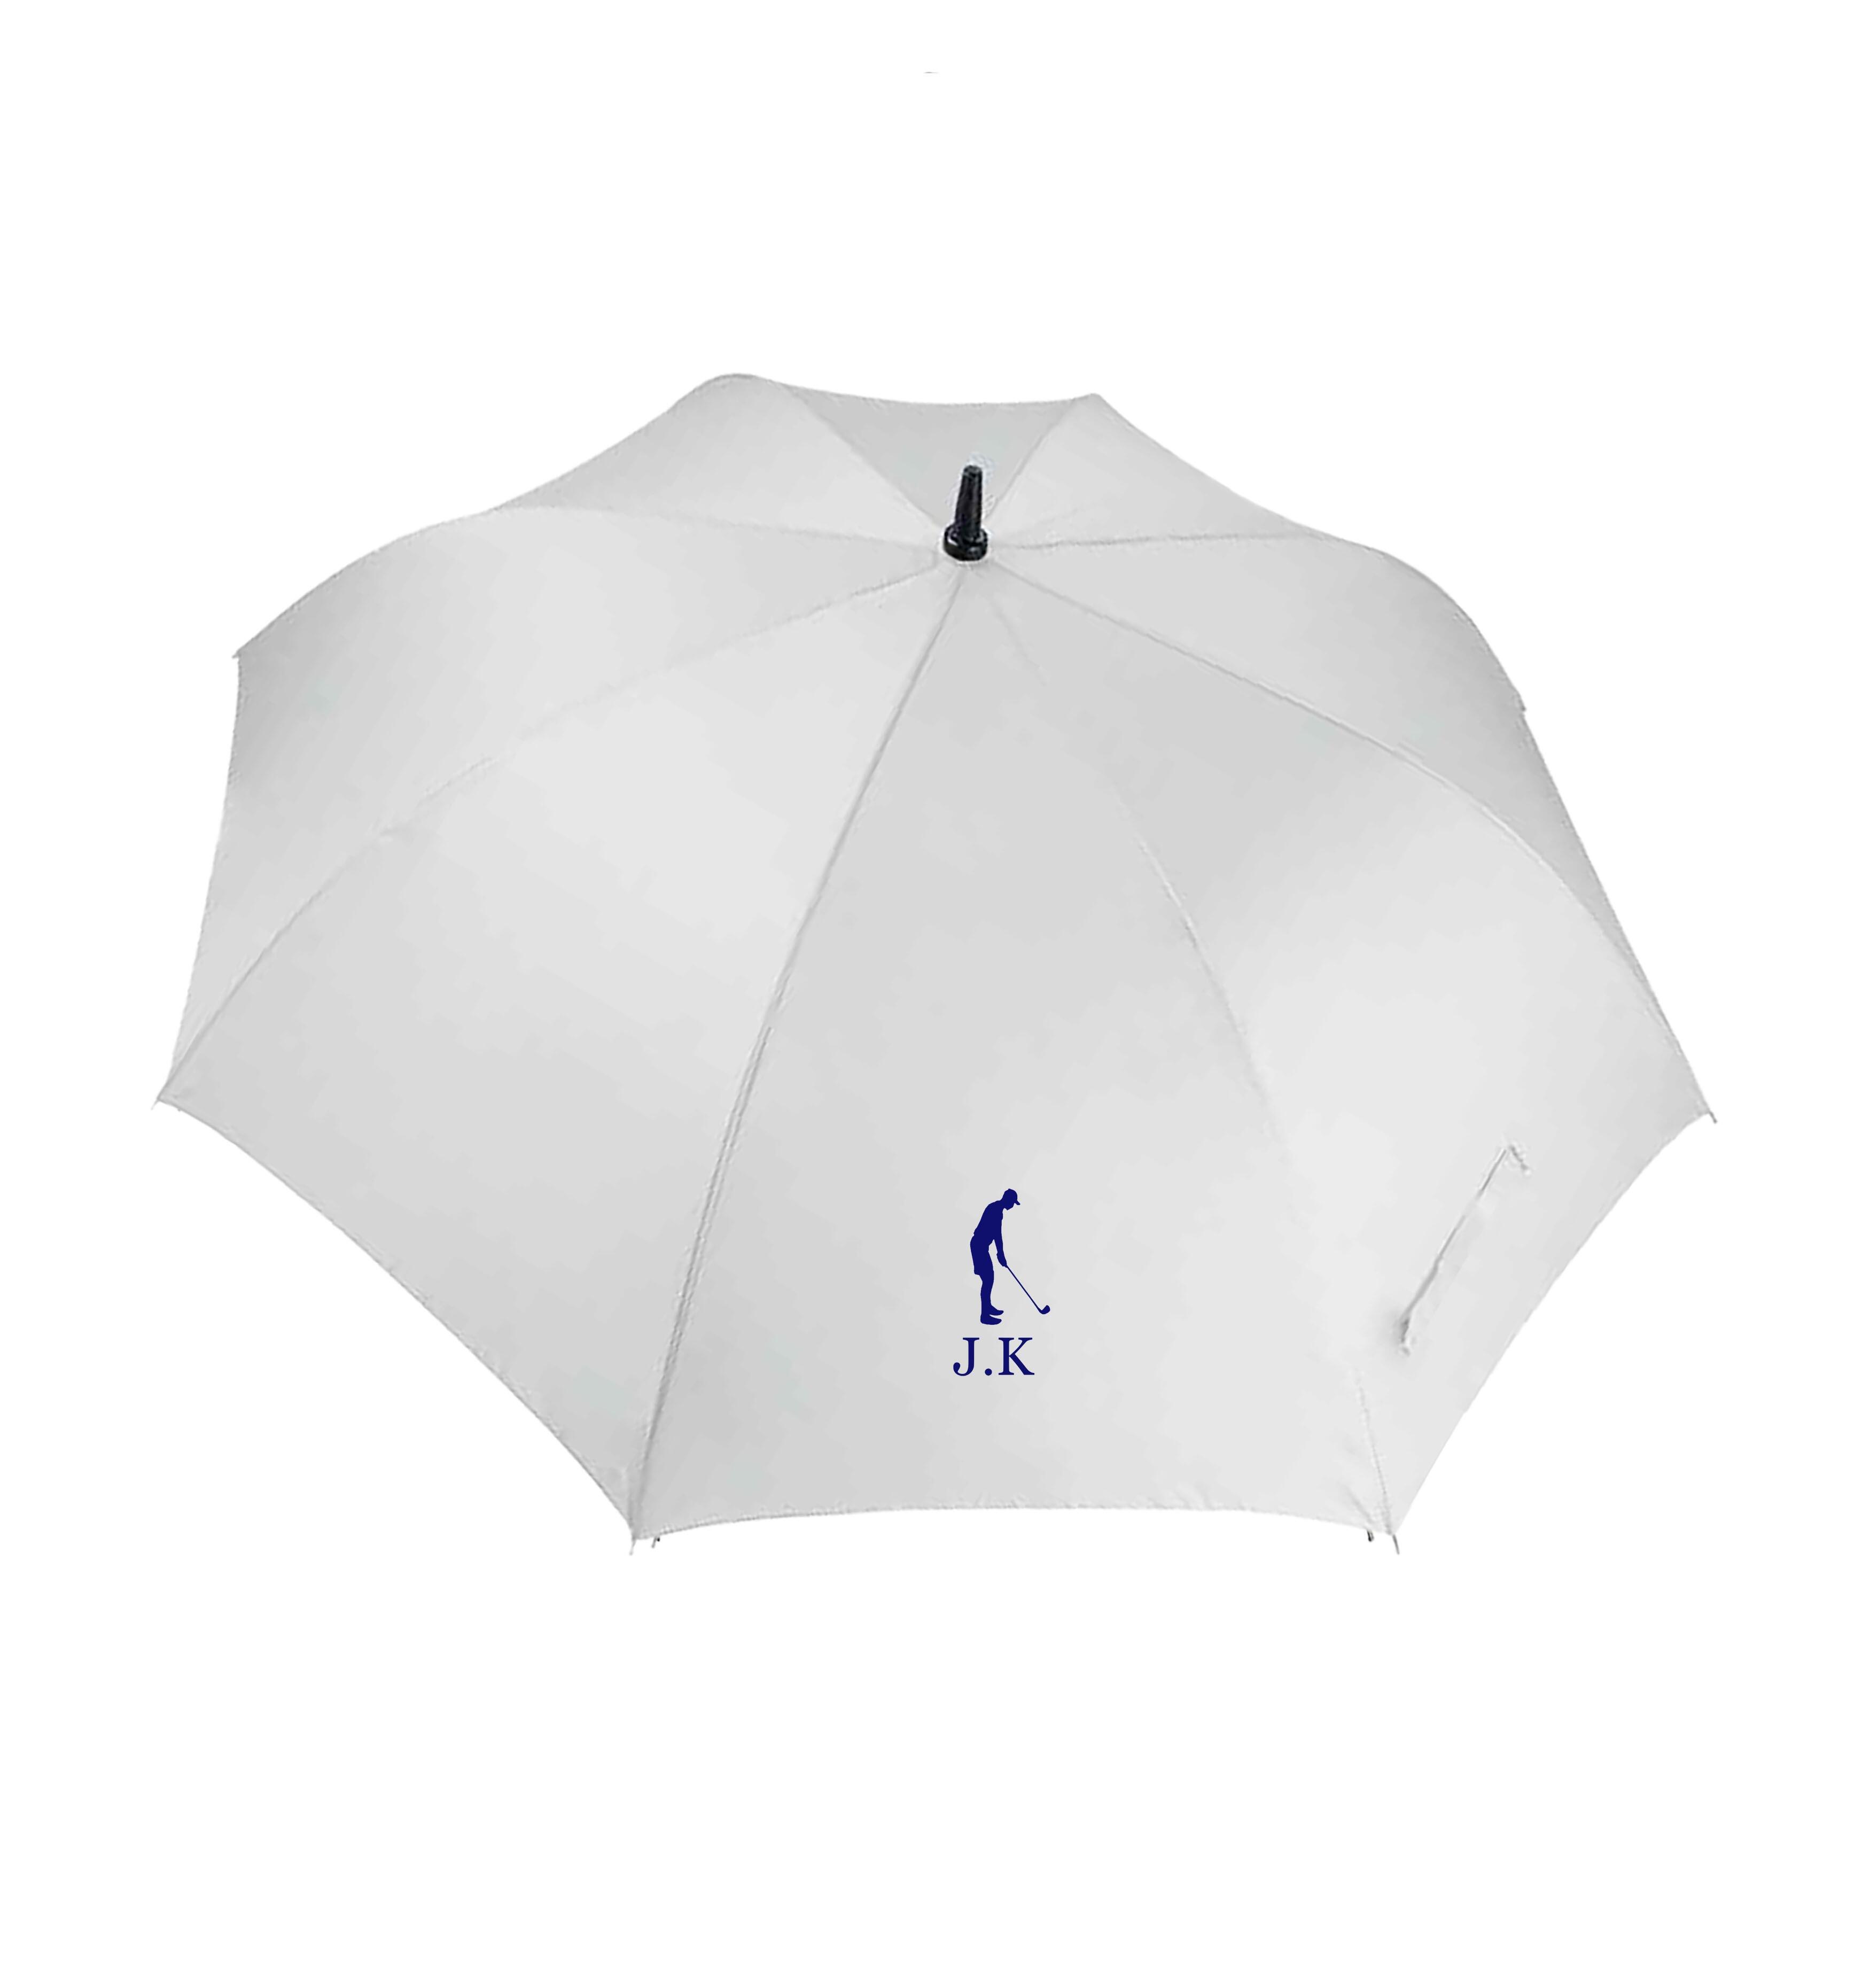 Men's Large Golf Umbrella White